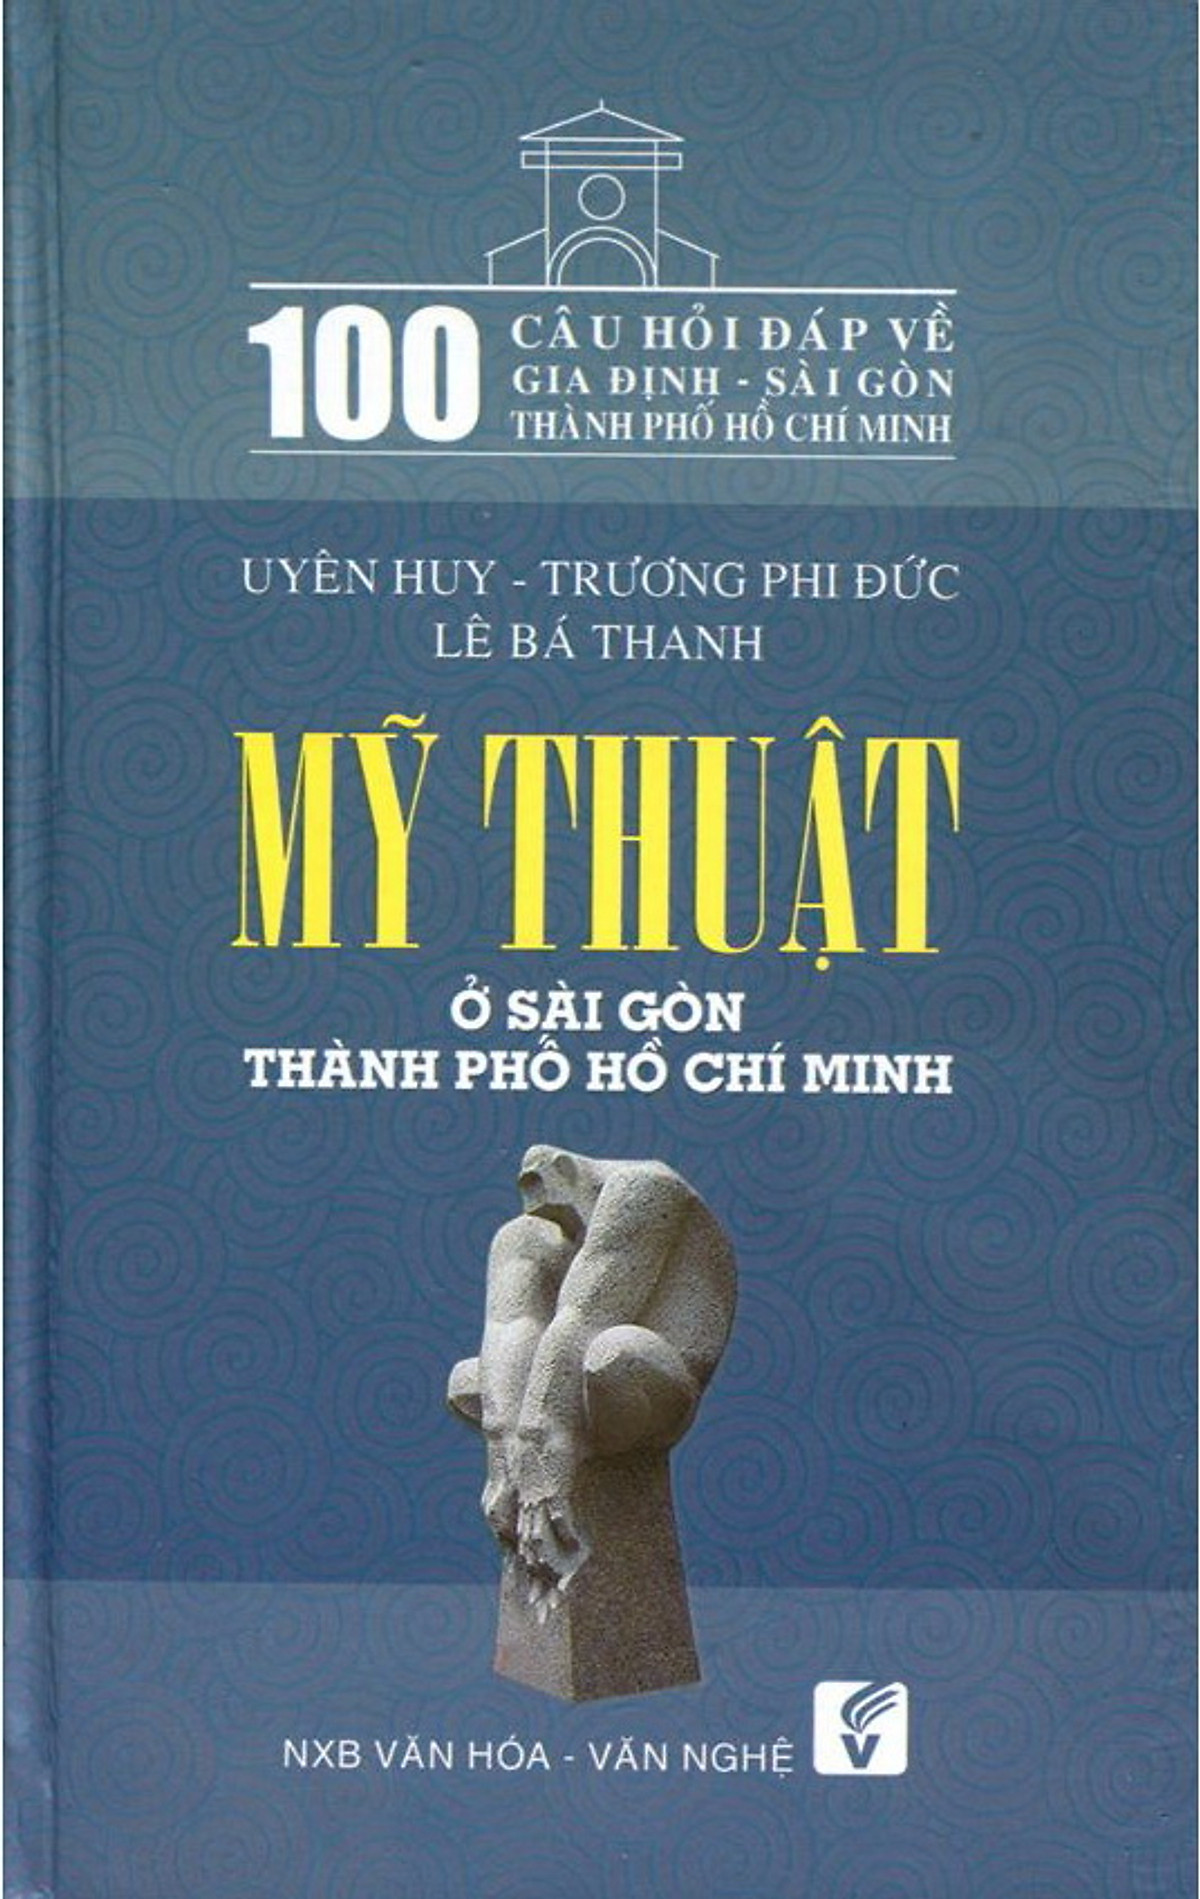 pic-100 Câu Hỏi Về Gia Định Sài Gòn - Mỹ Thuật Ở Sài Gòn Thành Phố Hồ Chí Minh